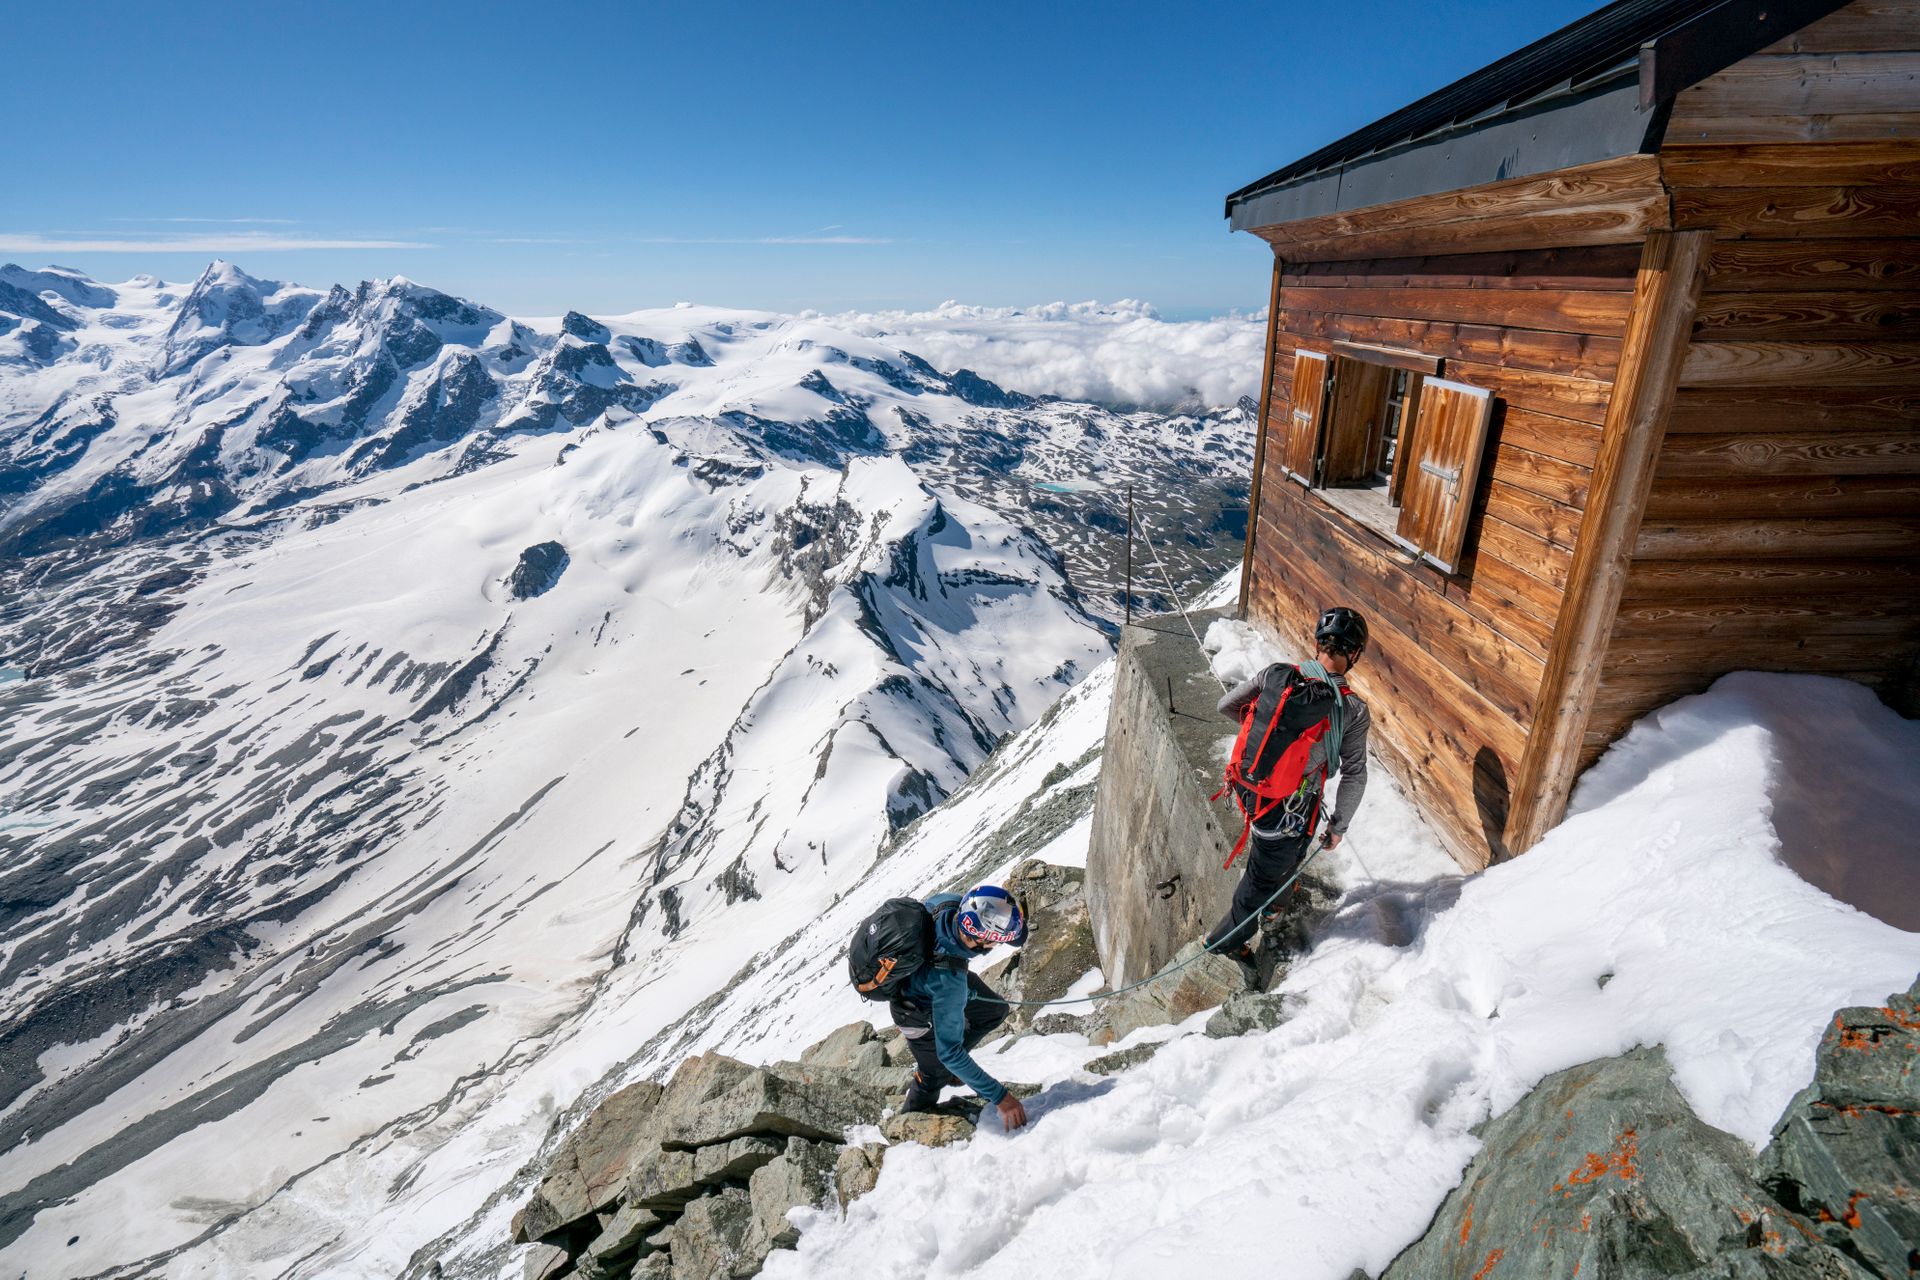 Il freeskier Jérémie Heitz e l’alpinista Sam Anthamatten durante la reale scalata del monte Cervino che ha ispirato Red Bull Svizzera